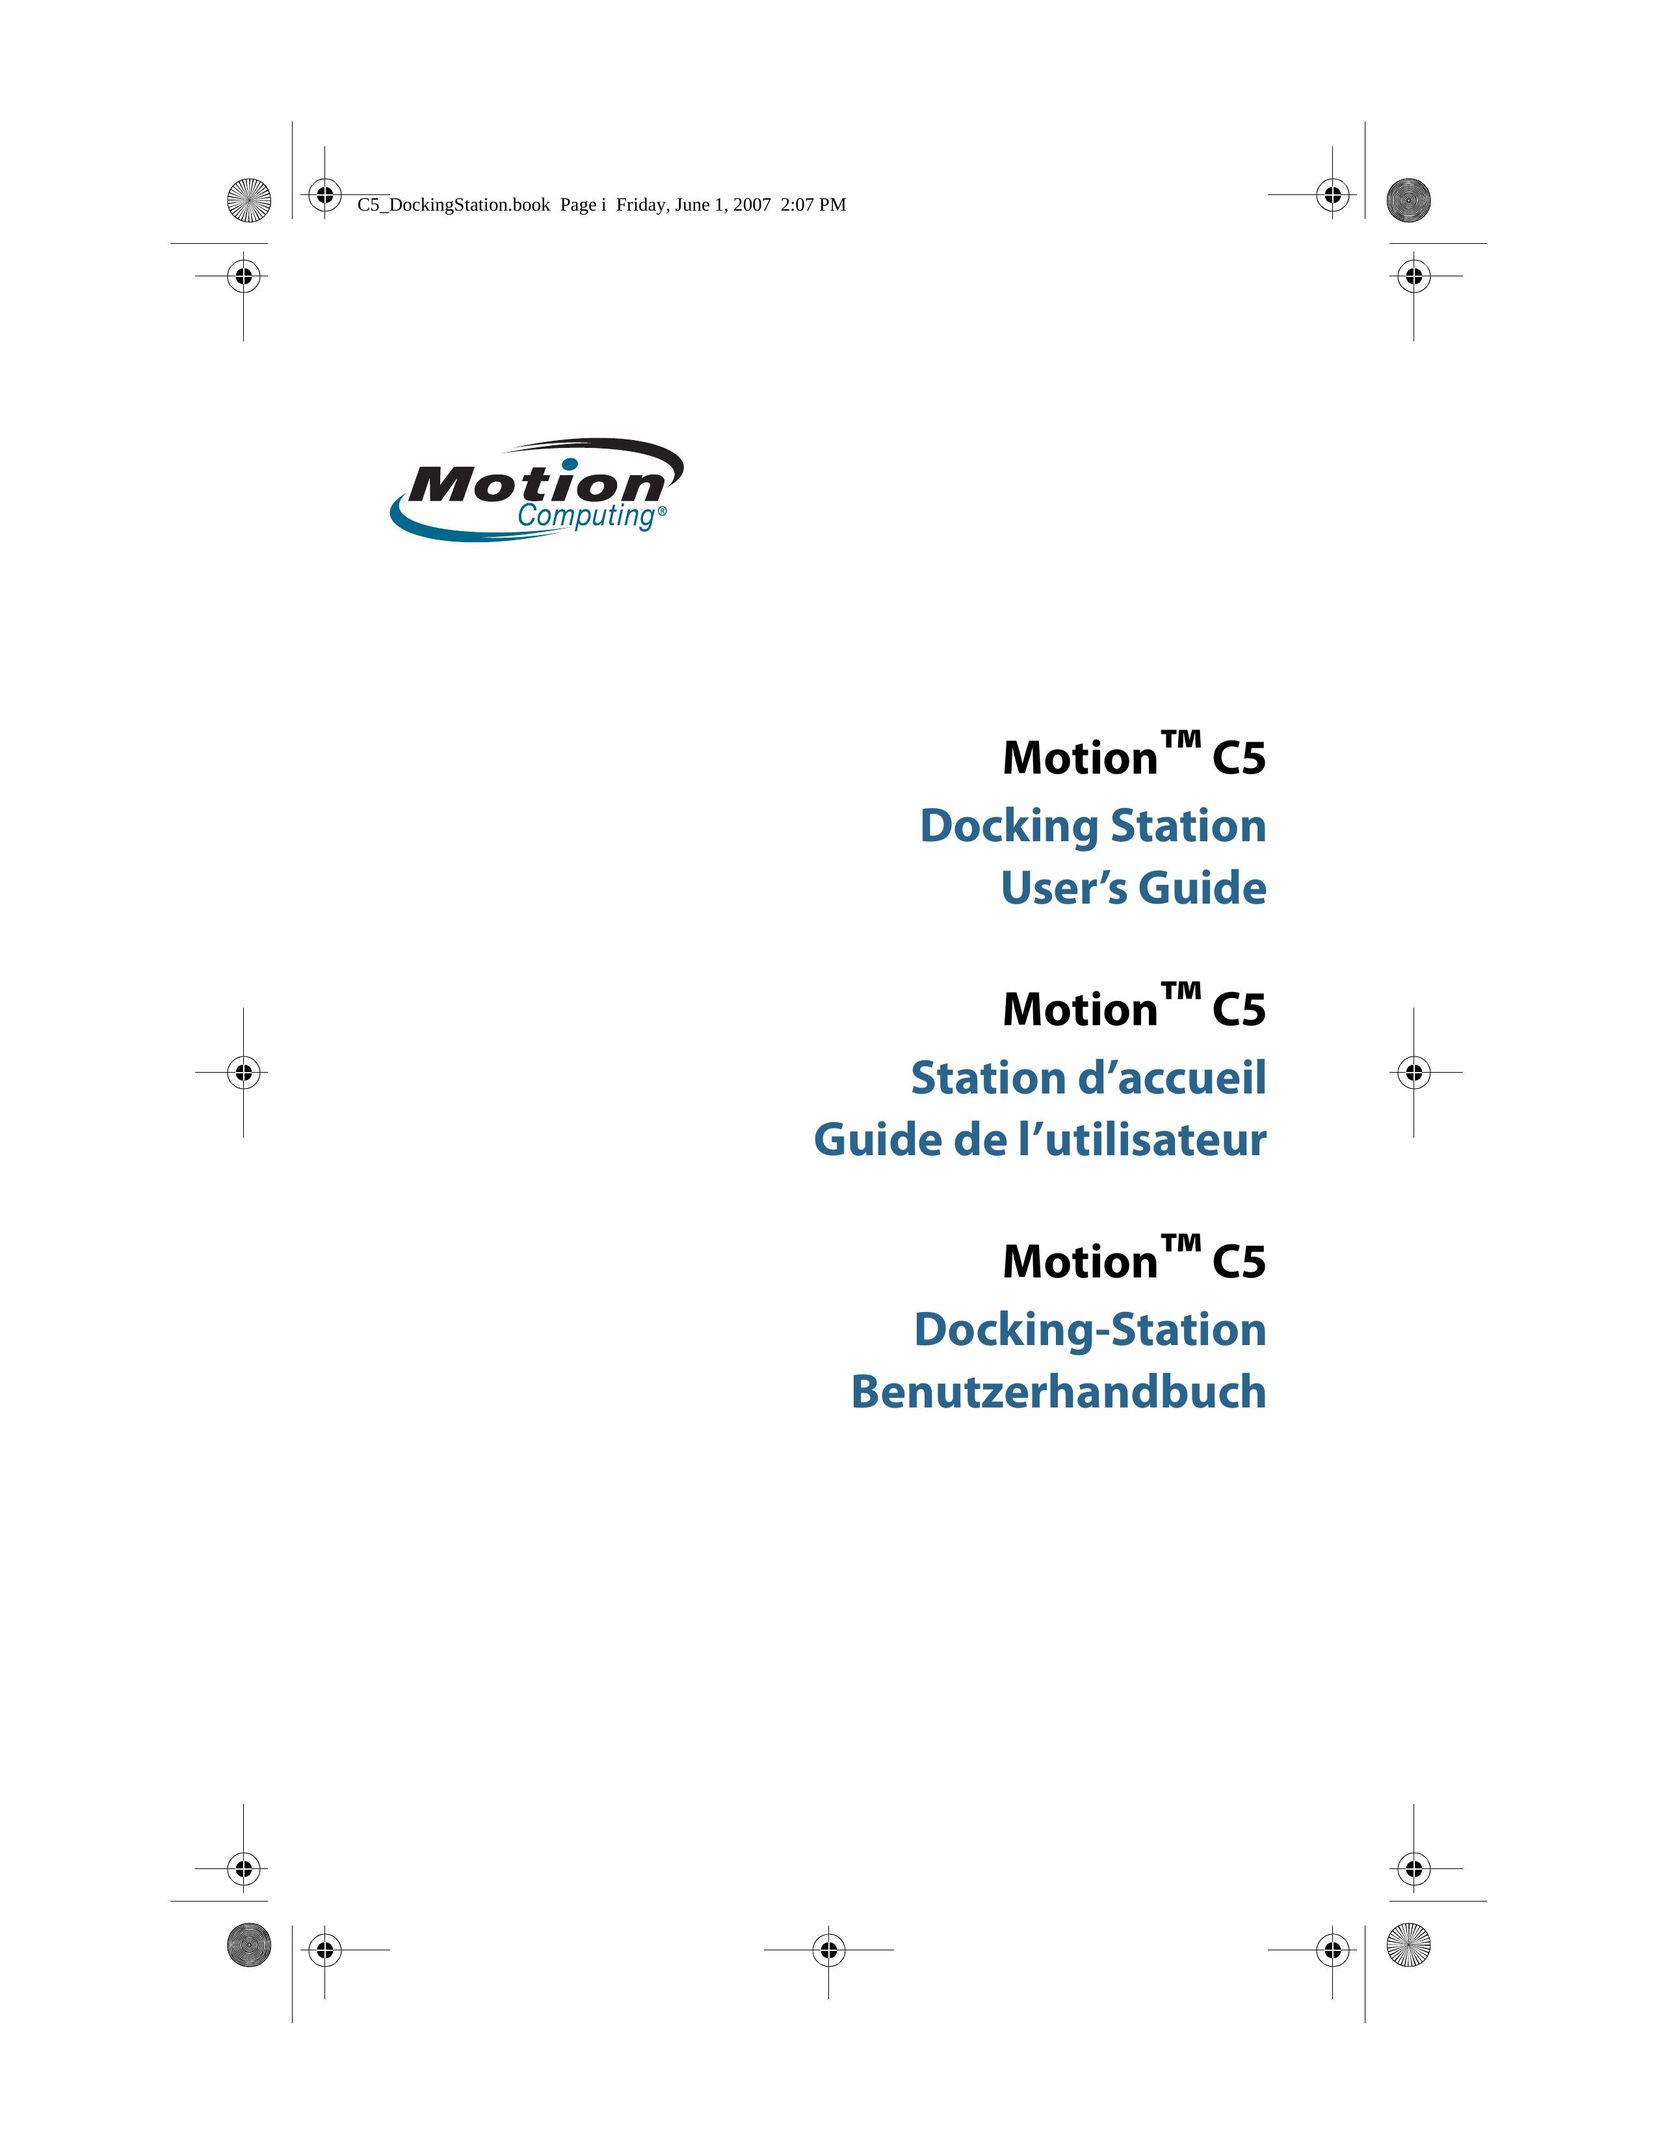 Motion Computing MotionTM C5 MP3 Docking Station User Manual